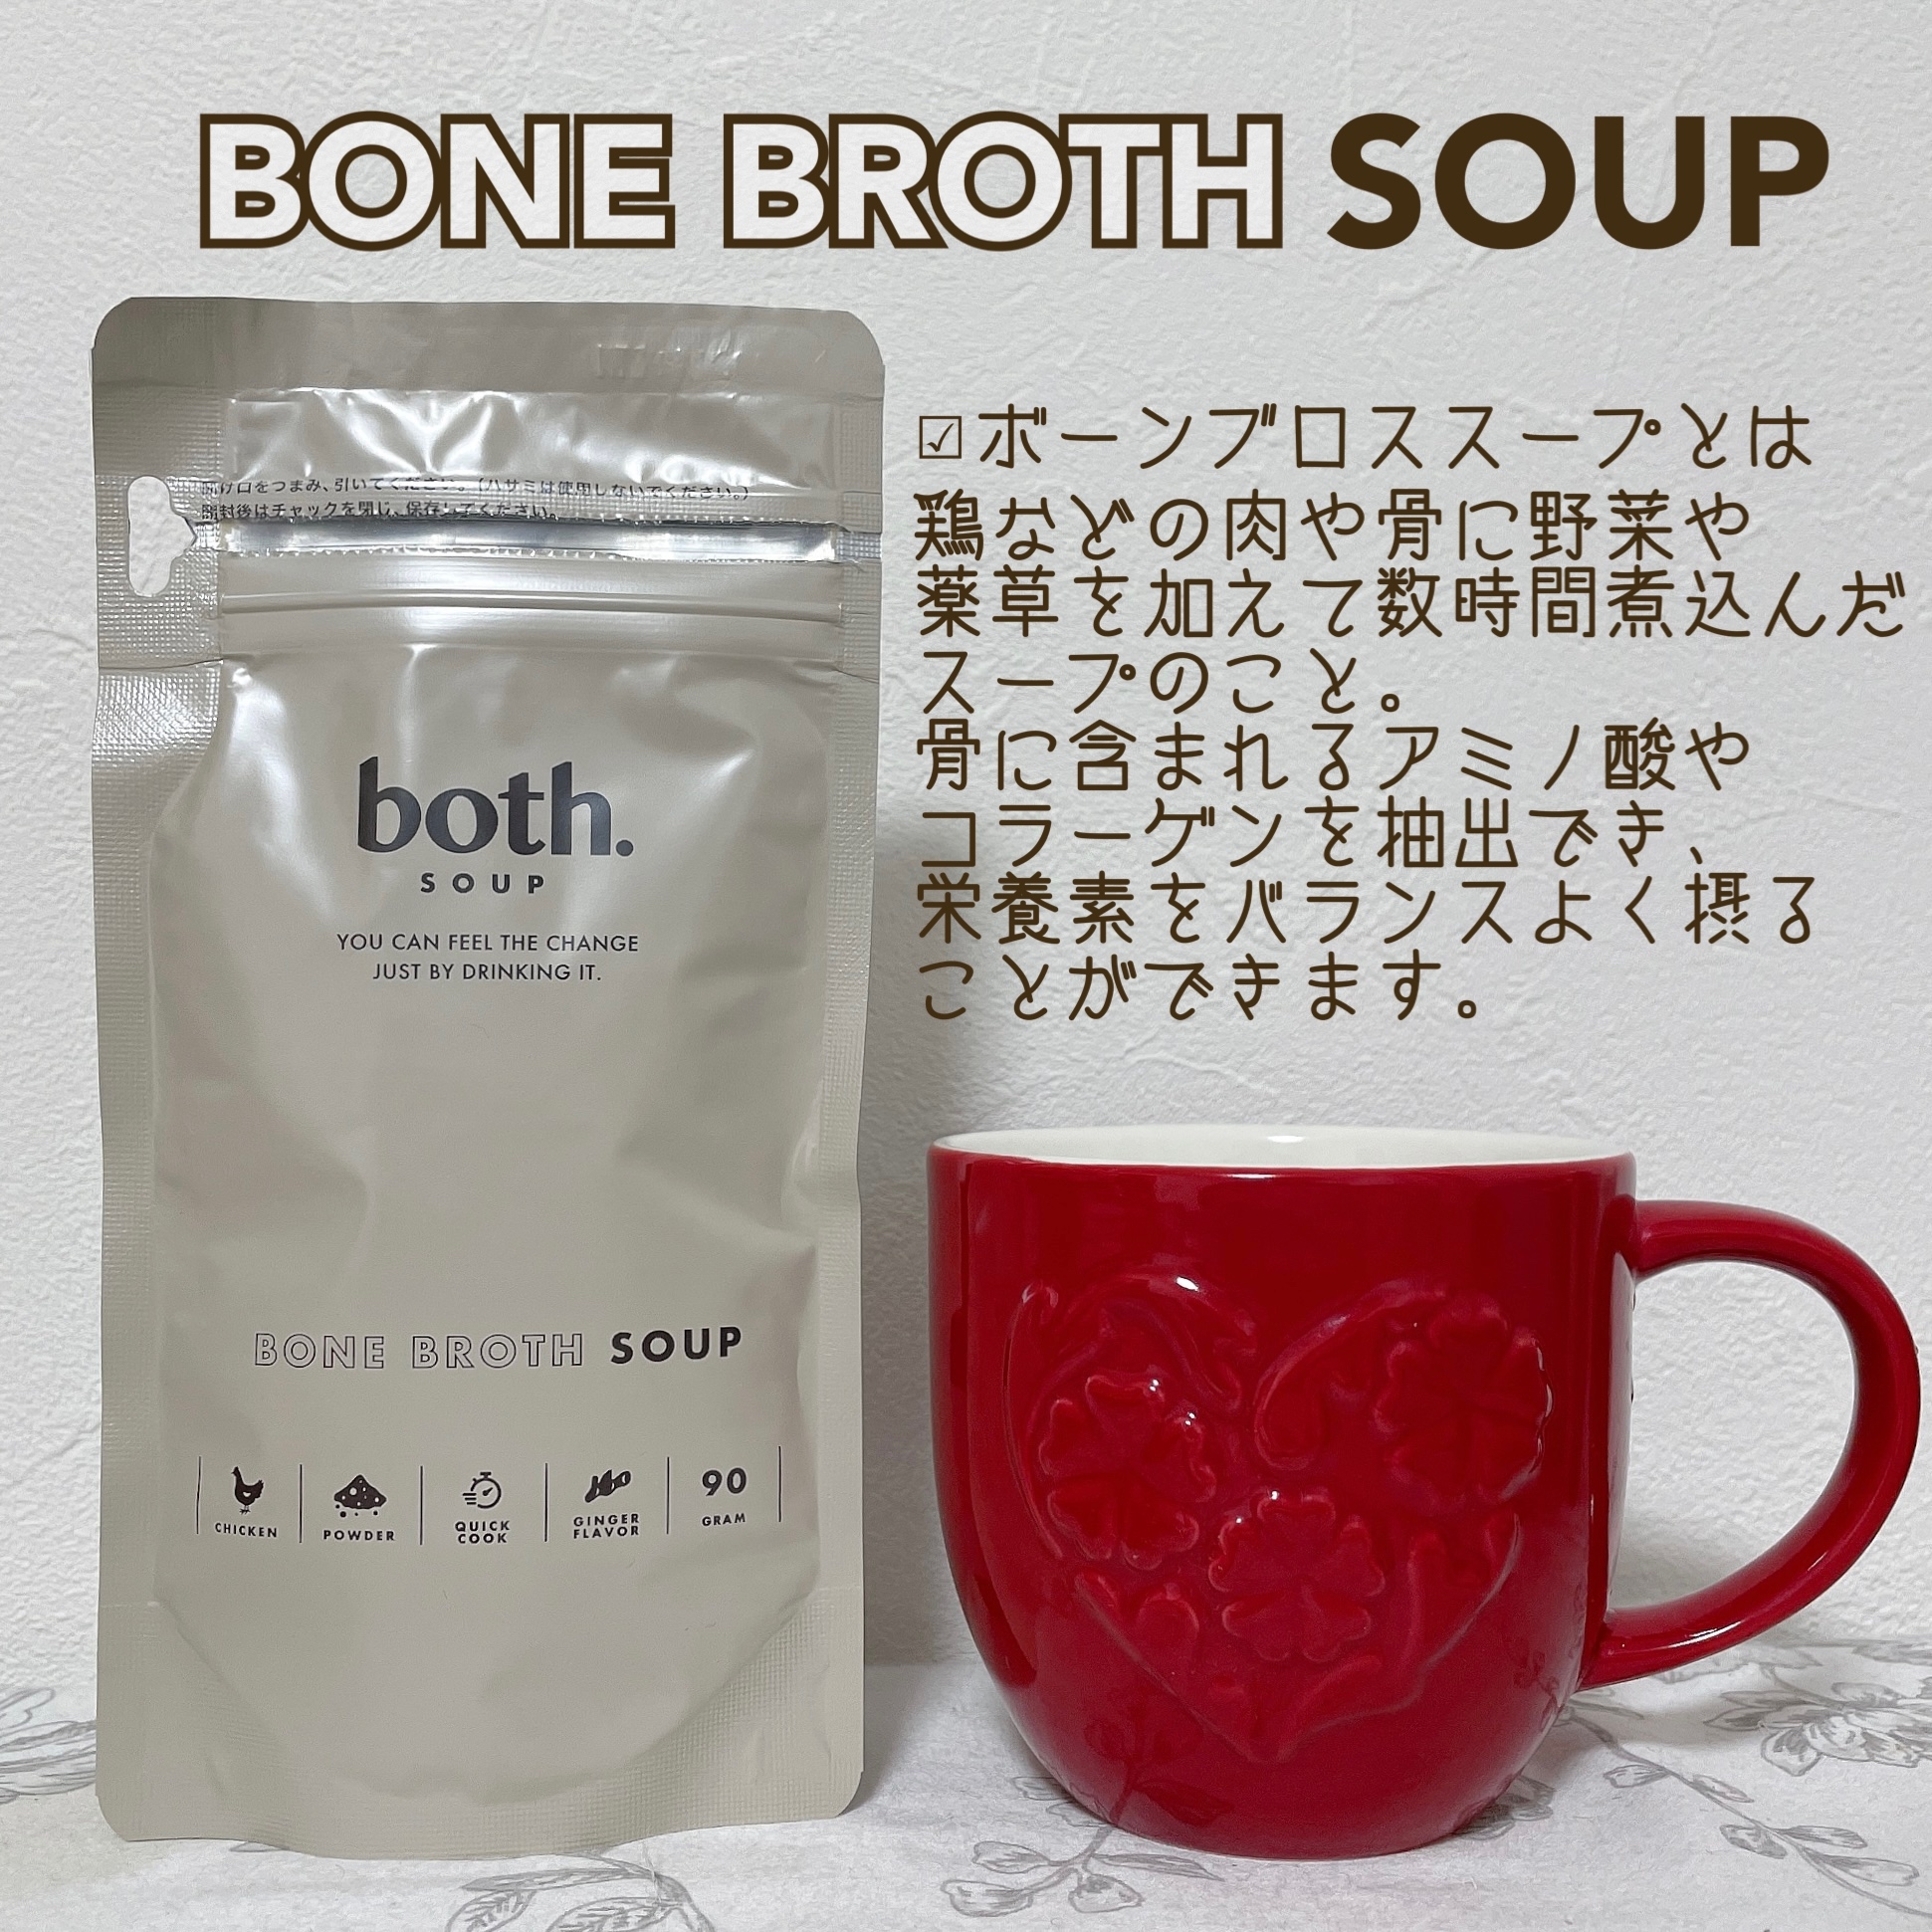 both.Soup(ボススープ) ボーンブロススープの良い点・メリットに関するもいさんの口コミ画像2